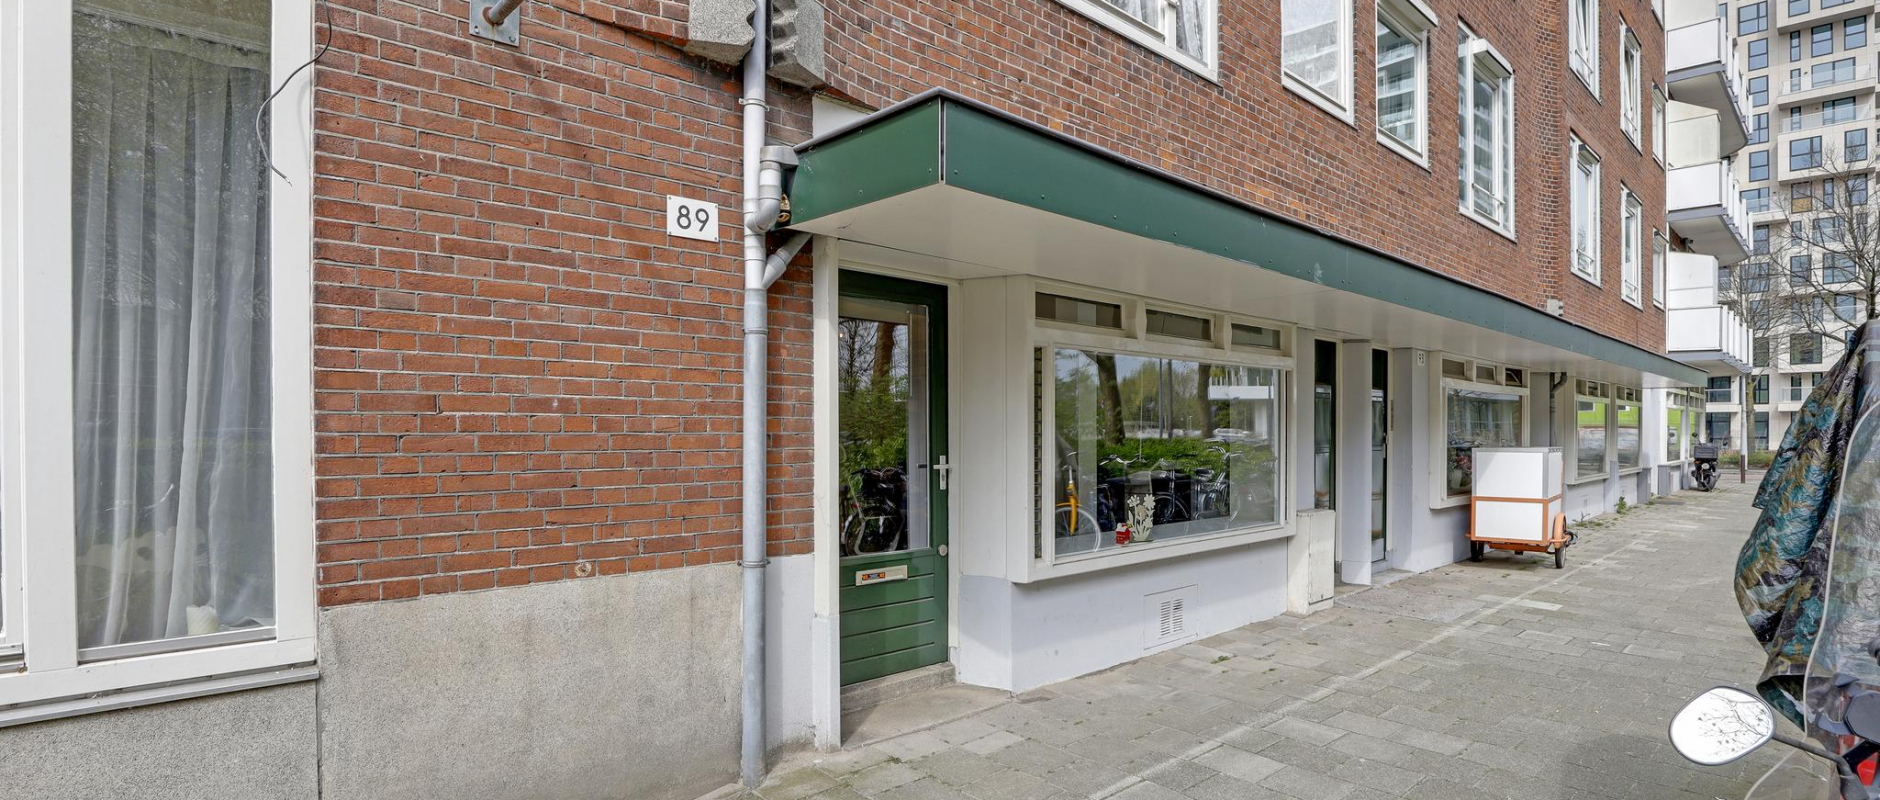 Woning te koop aan de Solebaystraat 89 te Amsterdam